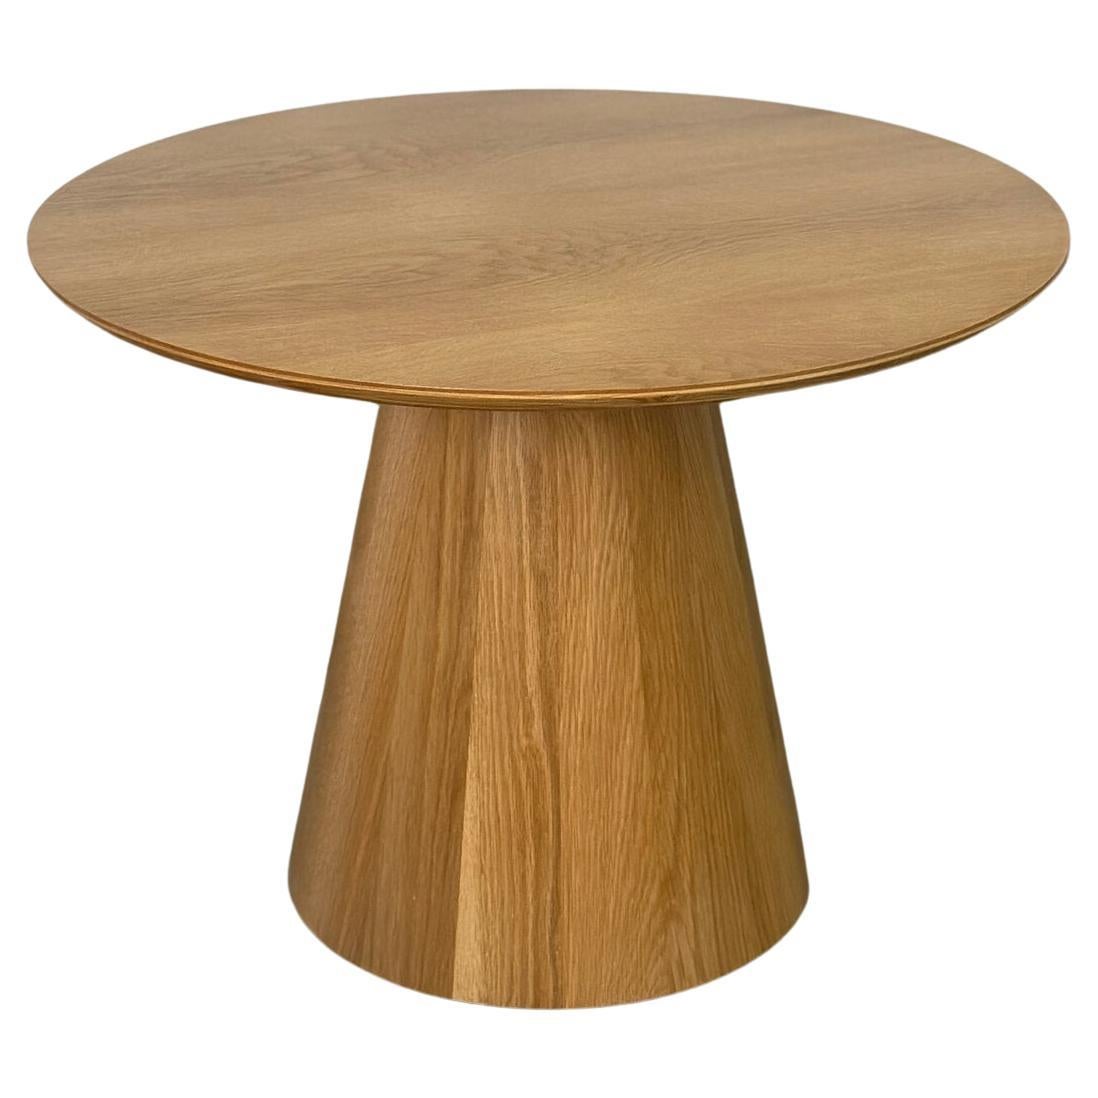 Conoid side table in white oak